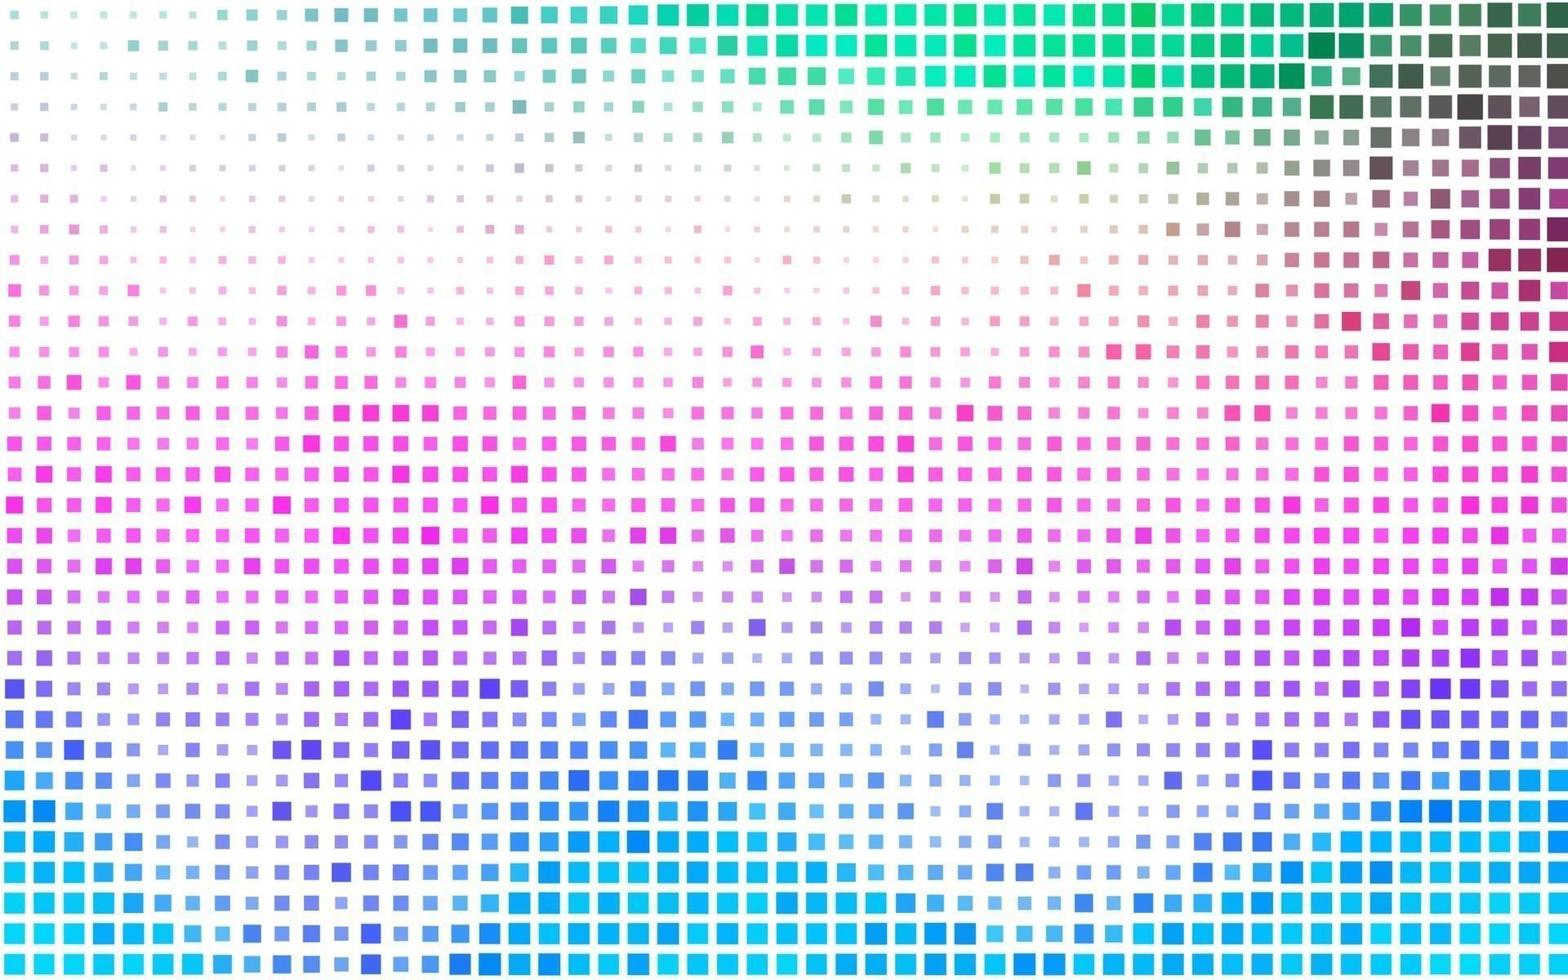 Fondo de vector de arco iris multicolor claro con rectángulos.